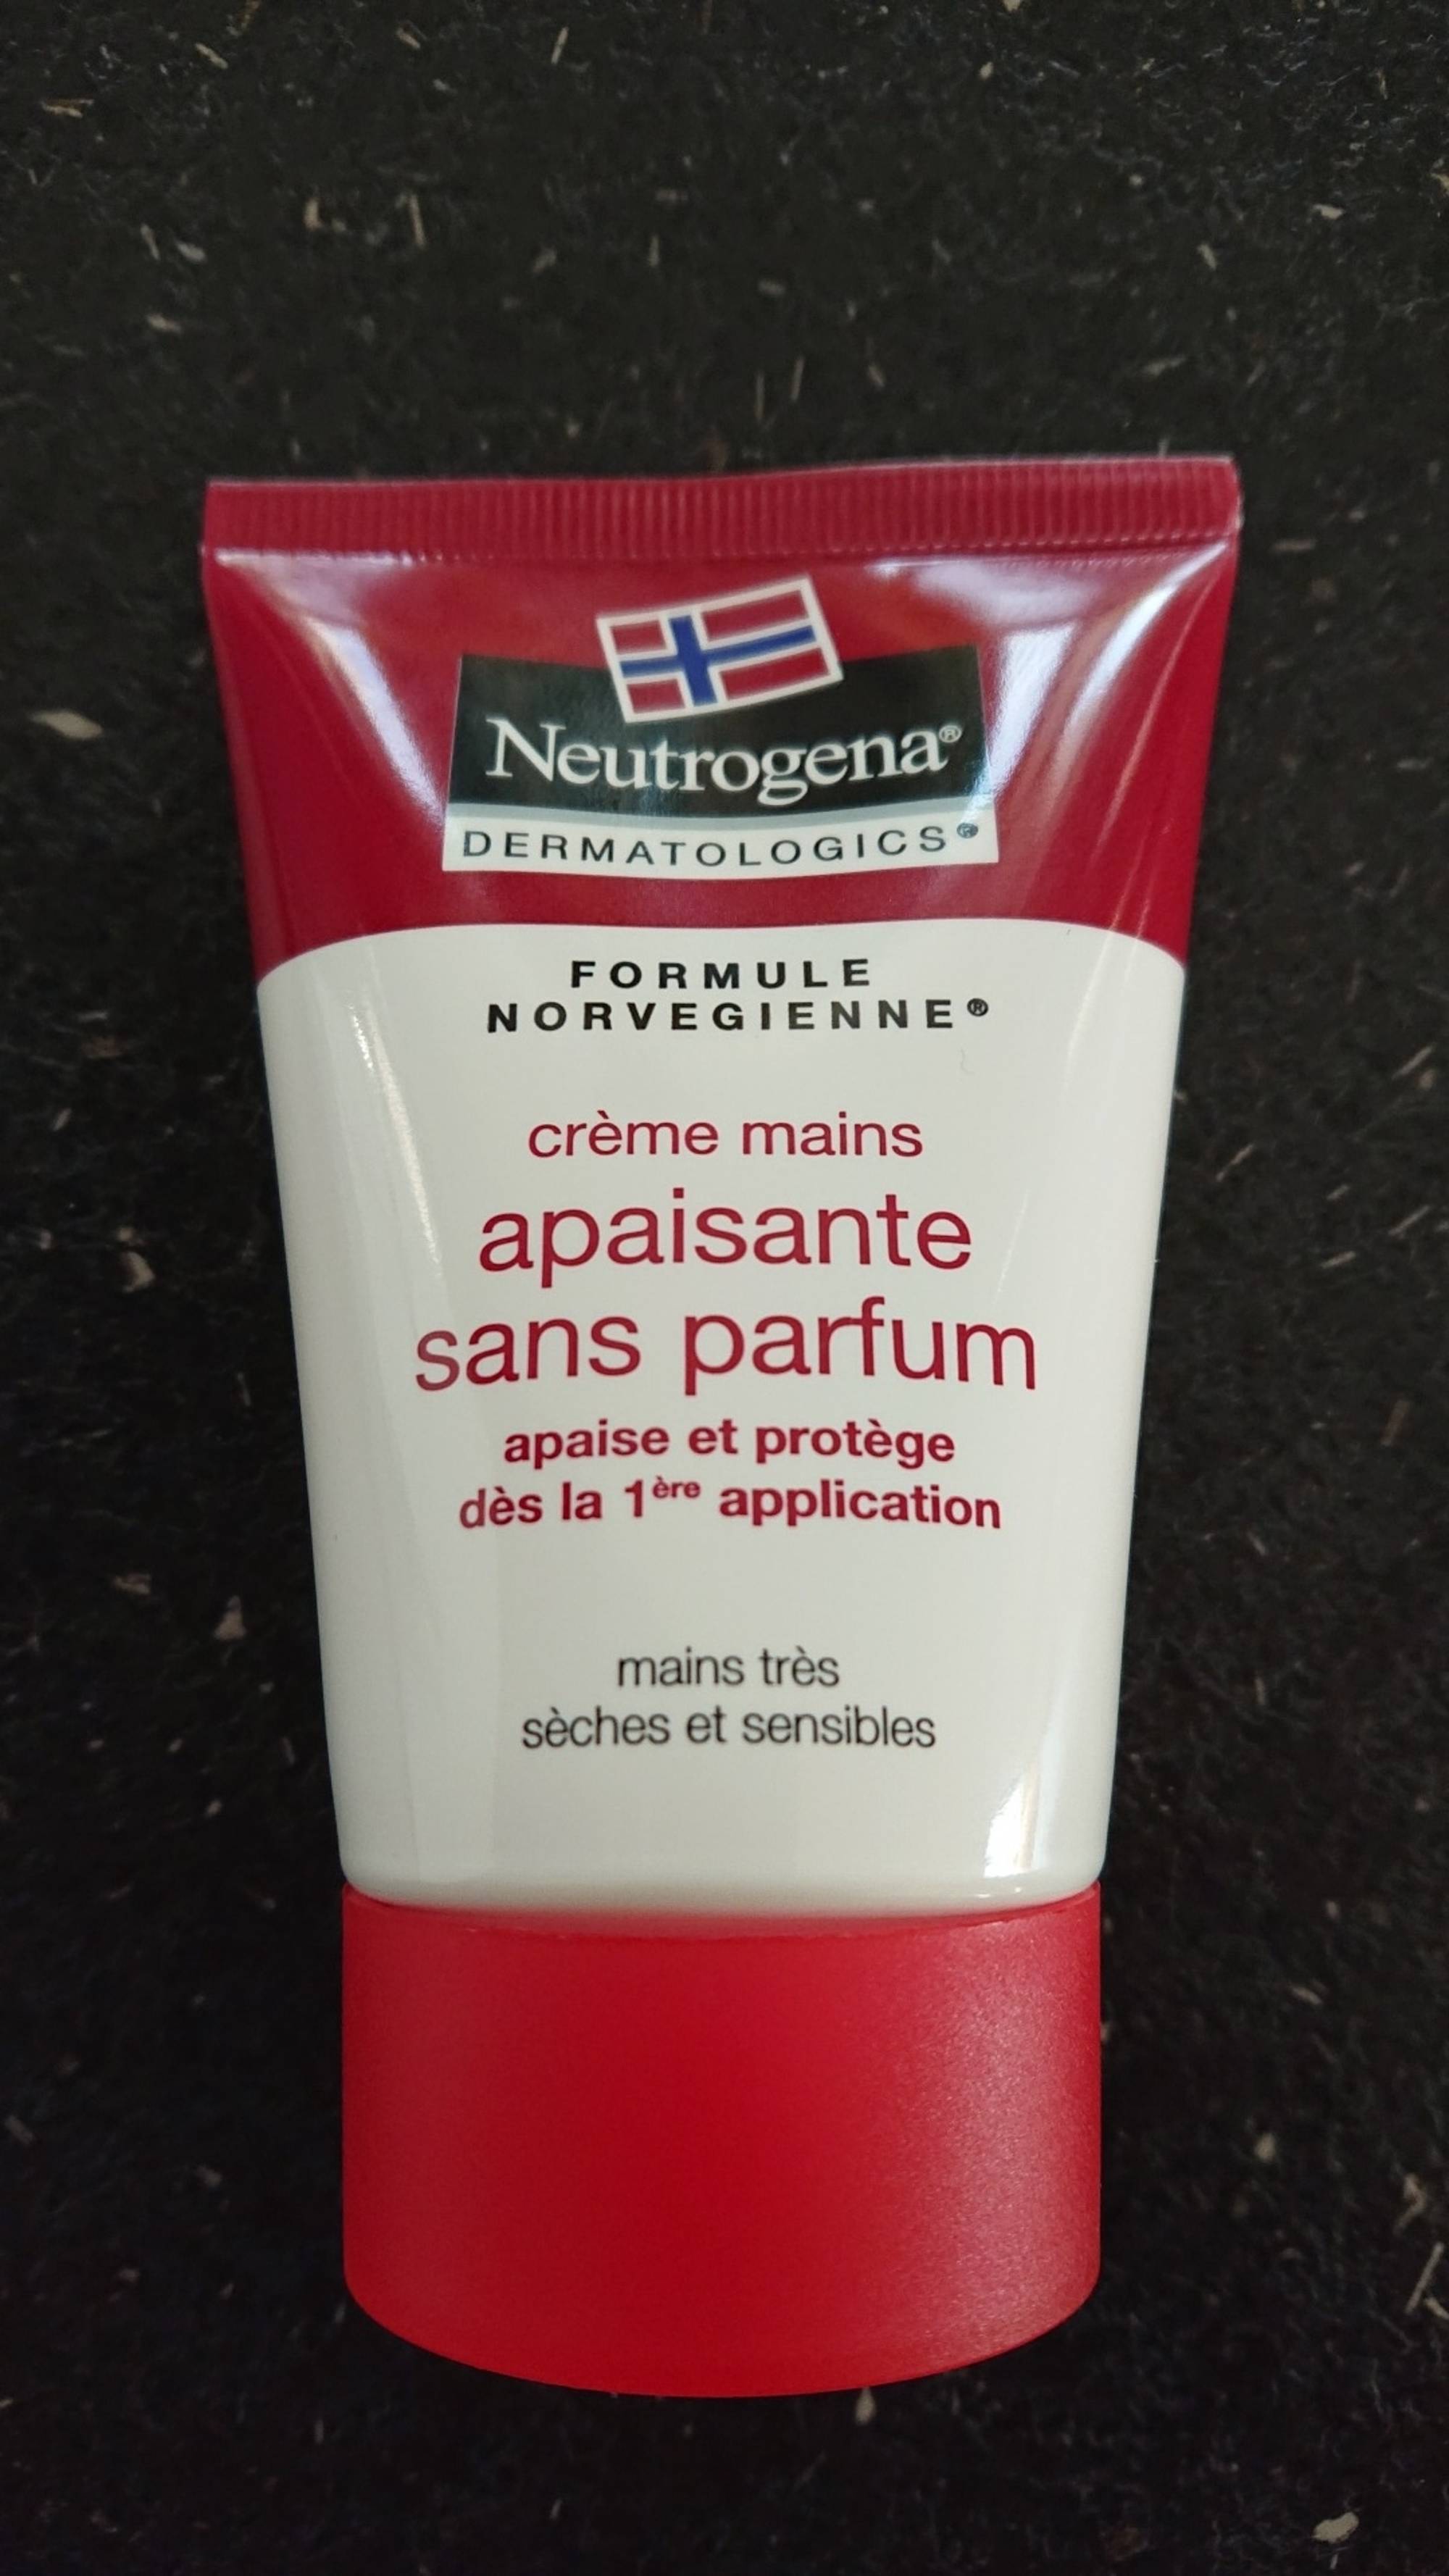 NEUTROGENA - Formule Norvegienne - Crème mains apaisante sans parfum